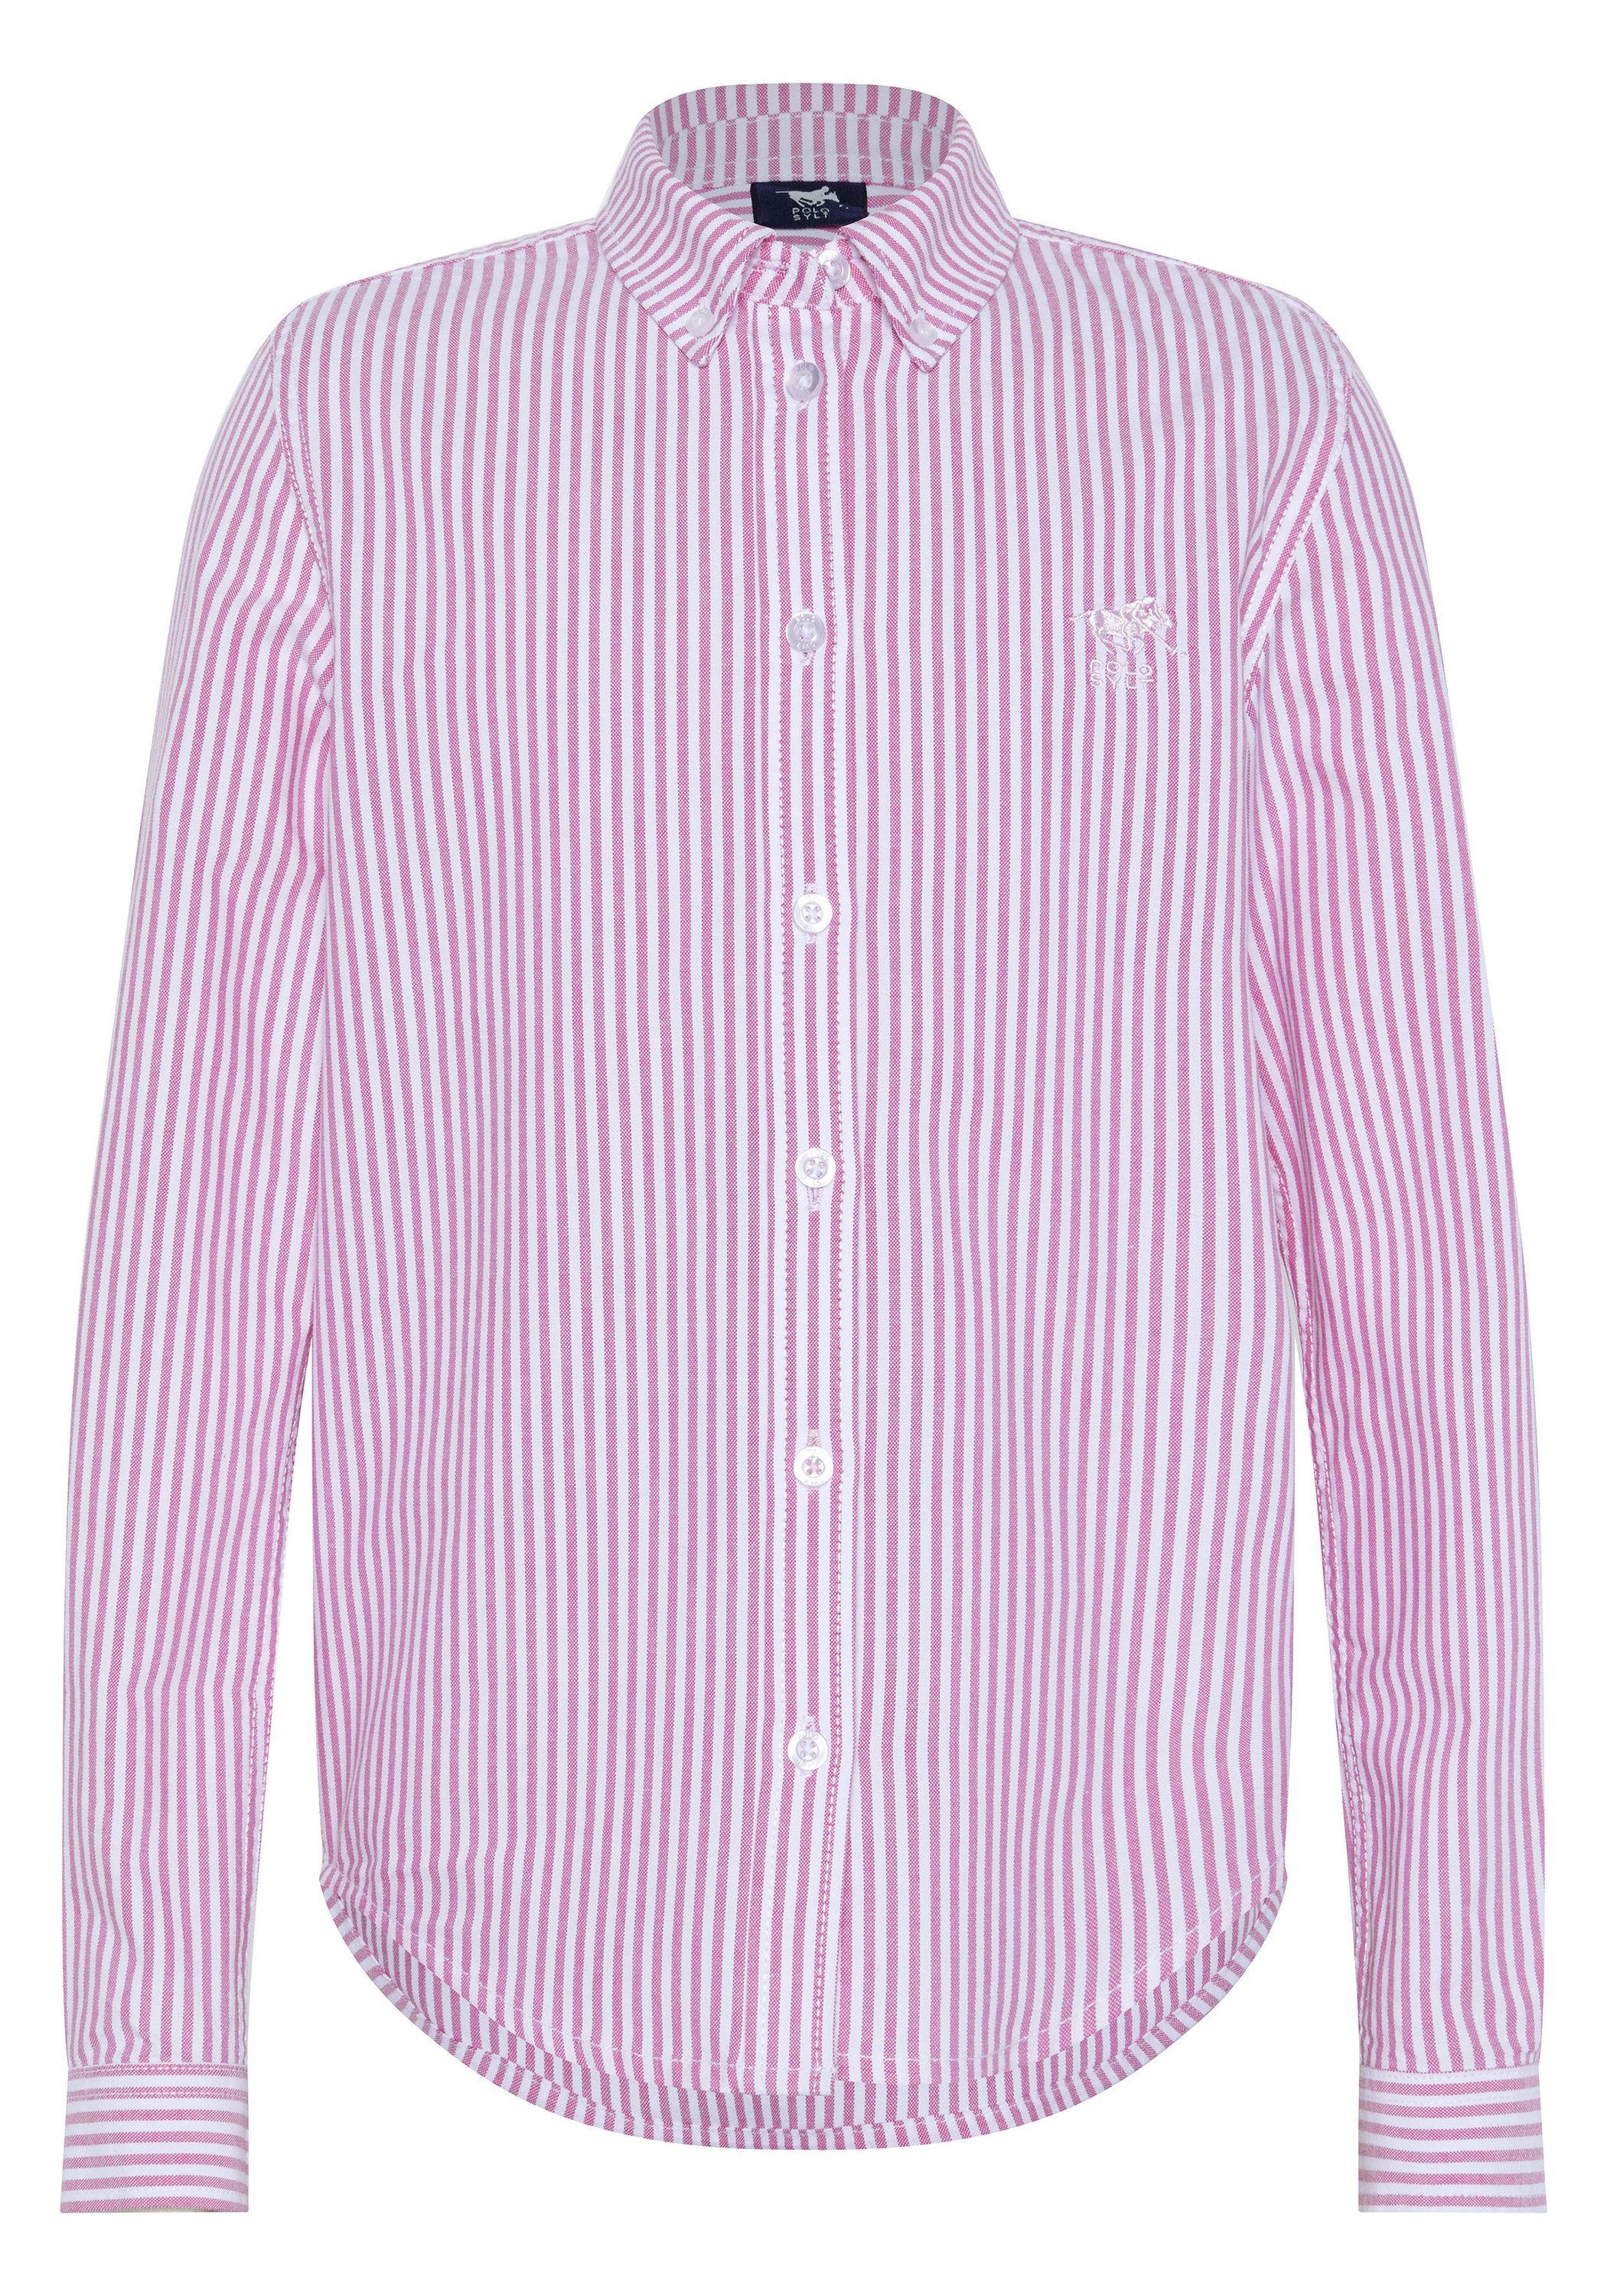 Polo Sylt Hemdbluse mit Streifenmuster 2910 Pink/White